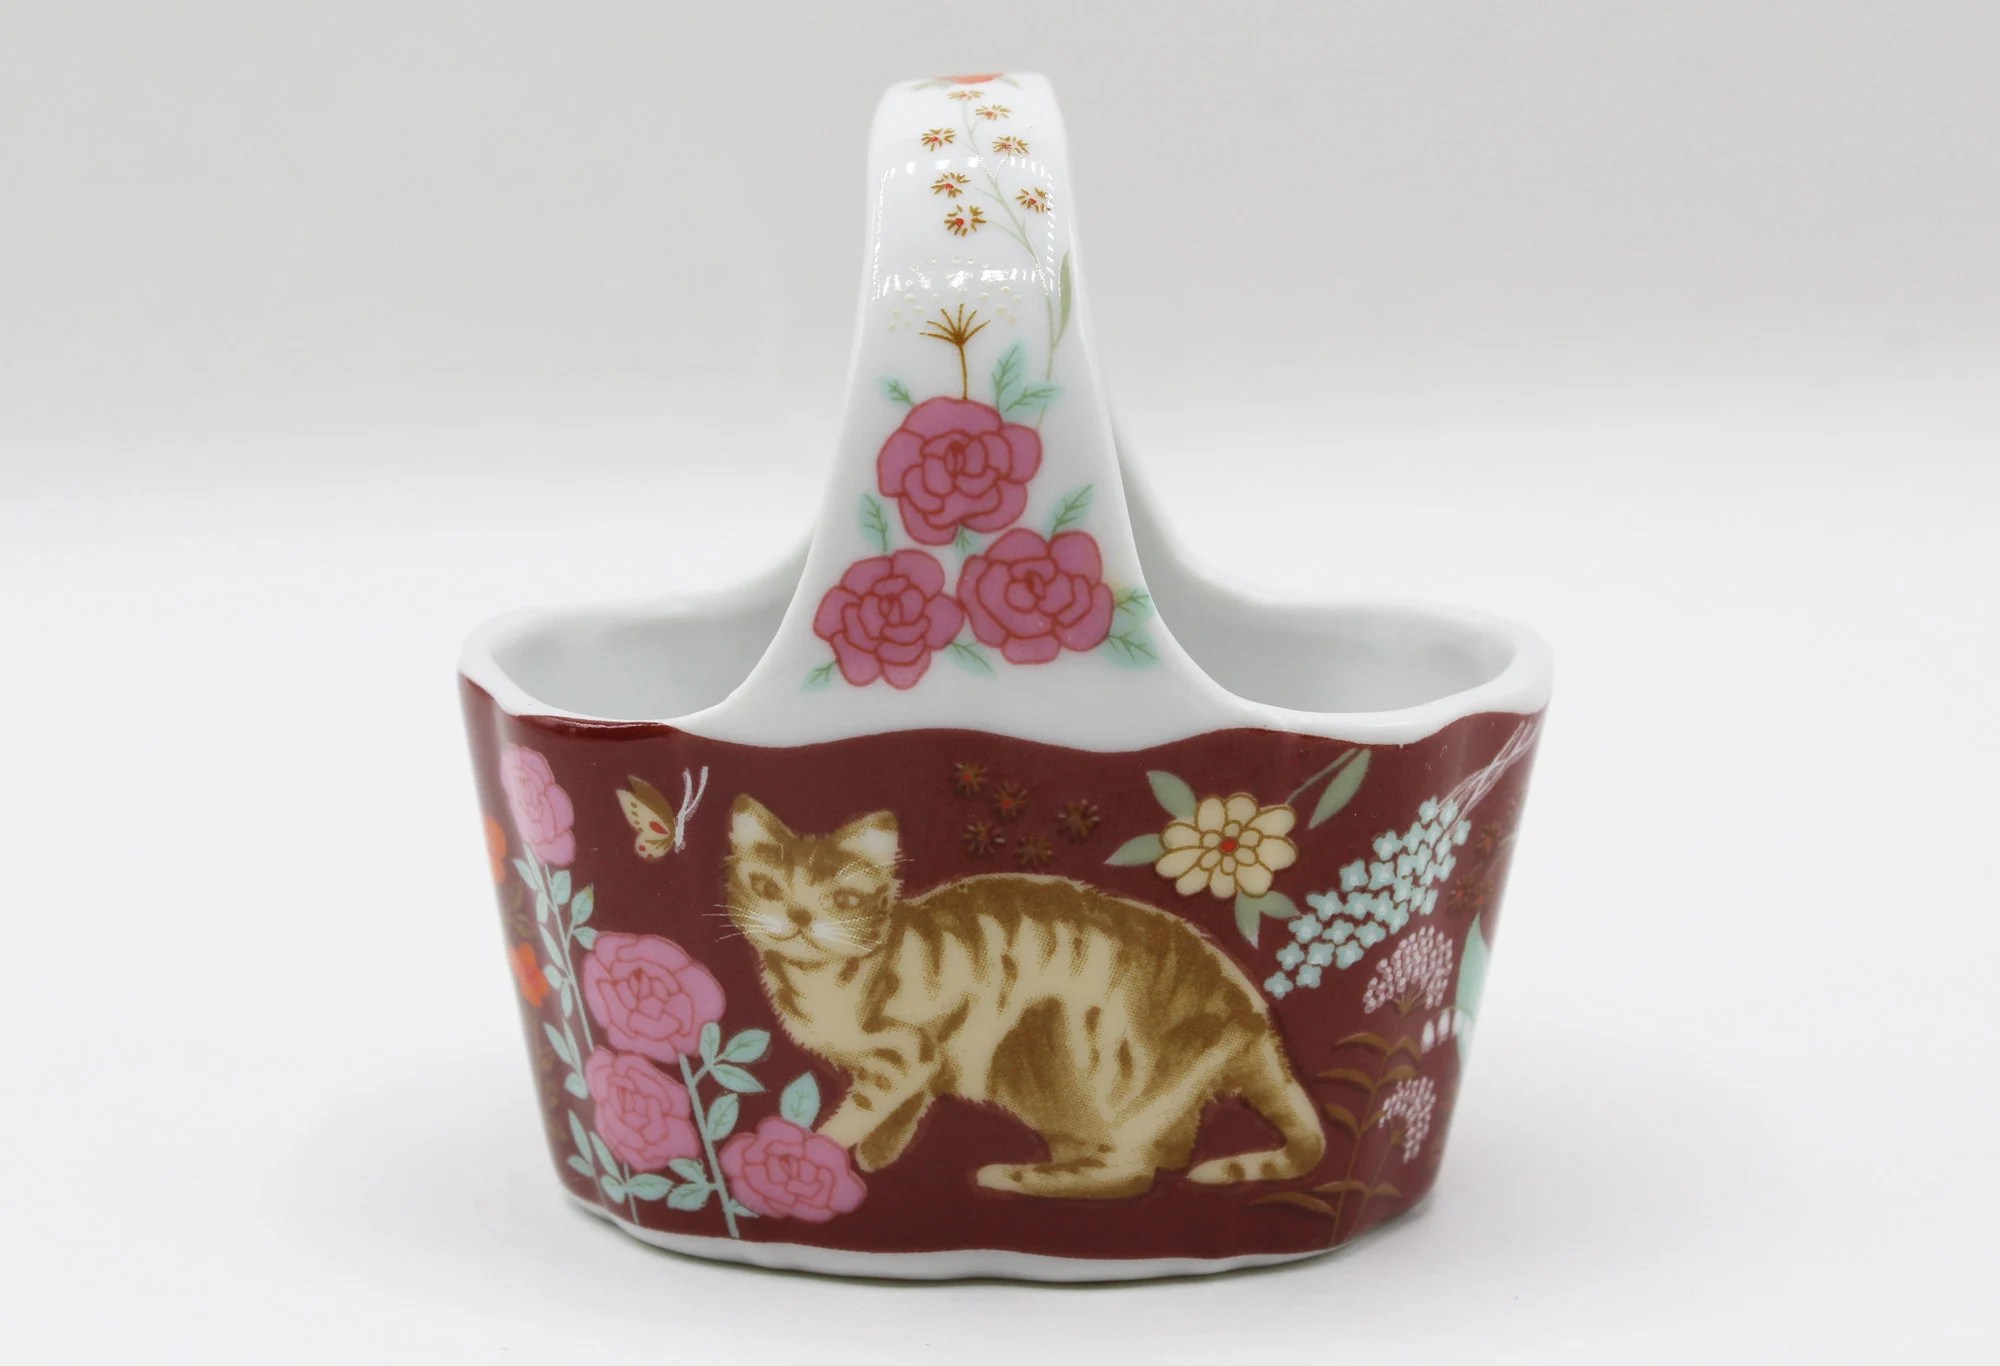 Vintage Action Made in Japan Porcelain Cat and Floral Design Trinket Basket Dish - Vintage, Granny, Animal, Cat Lovers, Cottage, Farmhouse